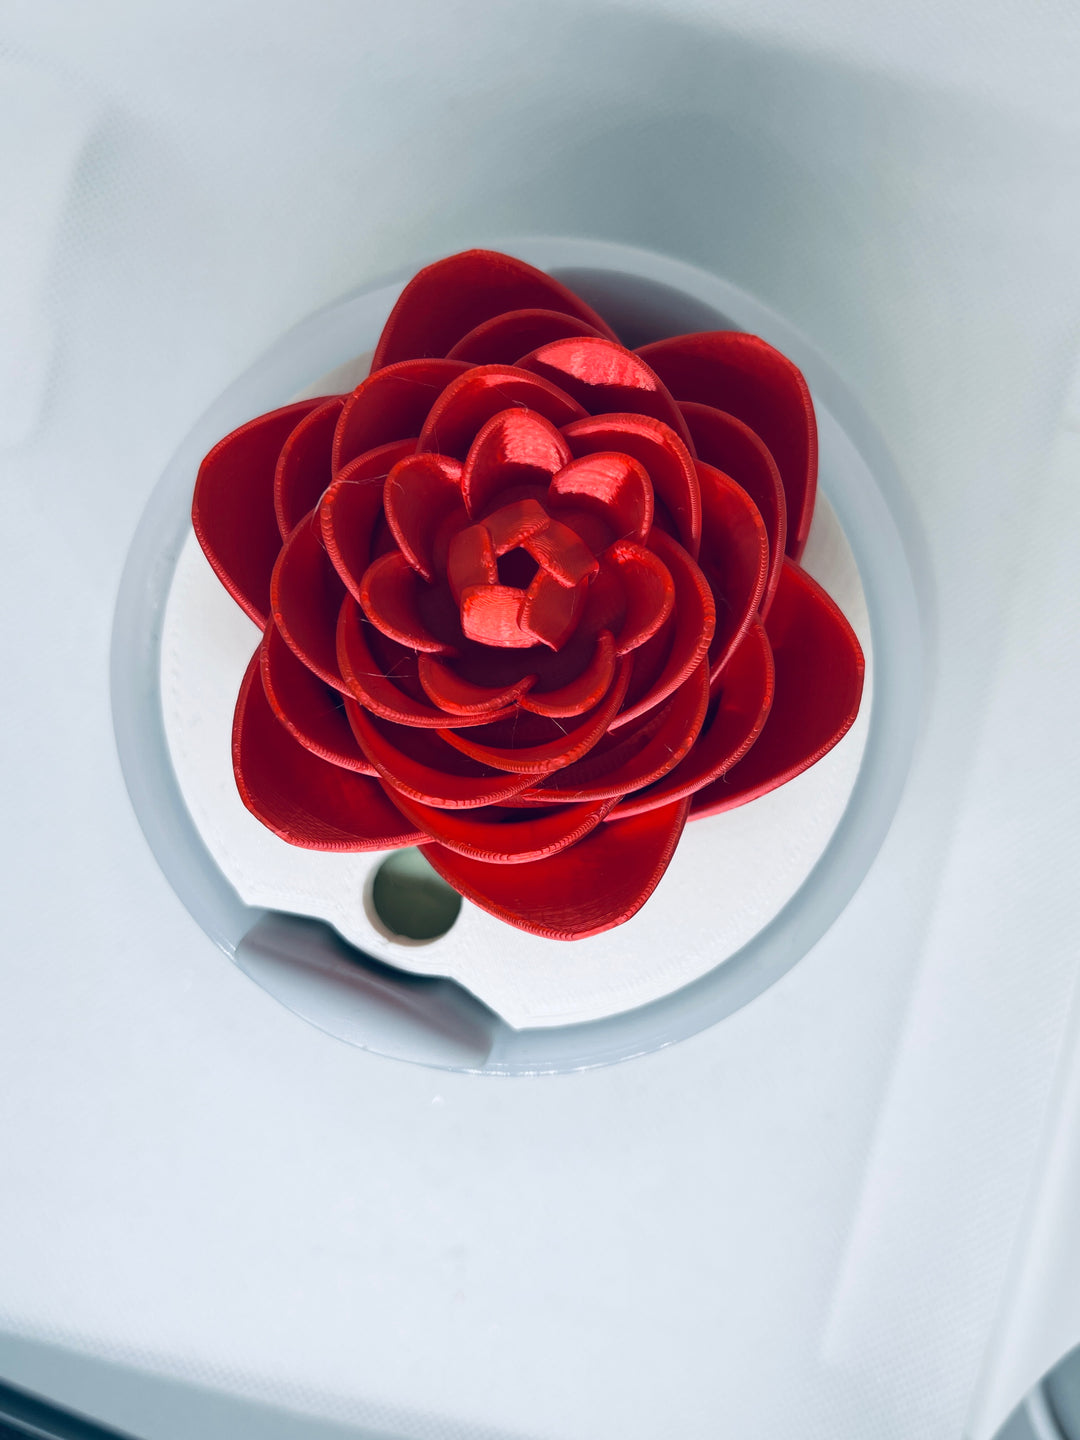 3D Red Rose 40 oz Tumbler Topper, 3D Valentines Love Flower 40 oz tumbler topper, 3D Decorative Lid Attachment